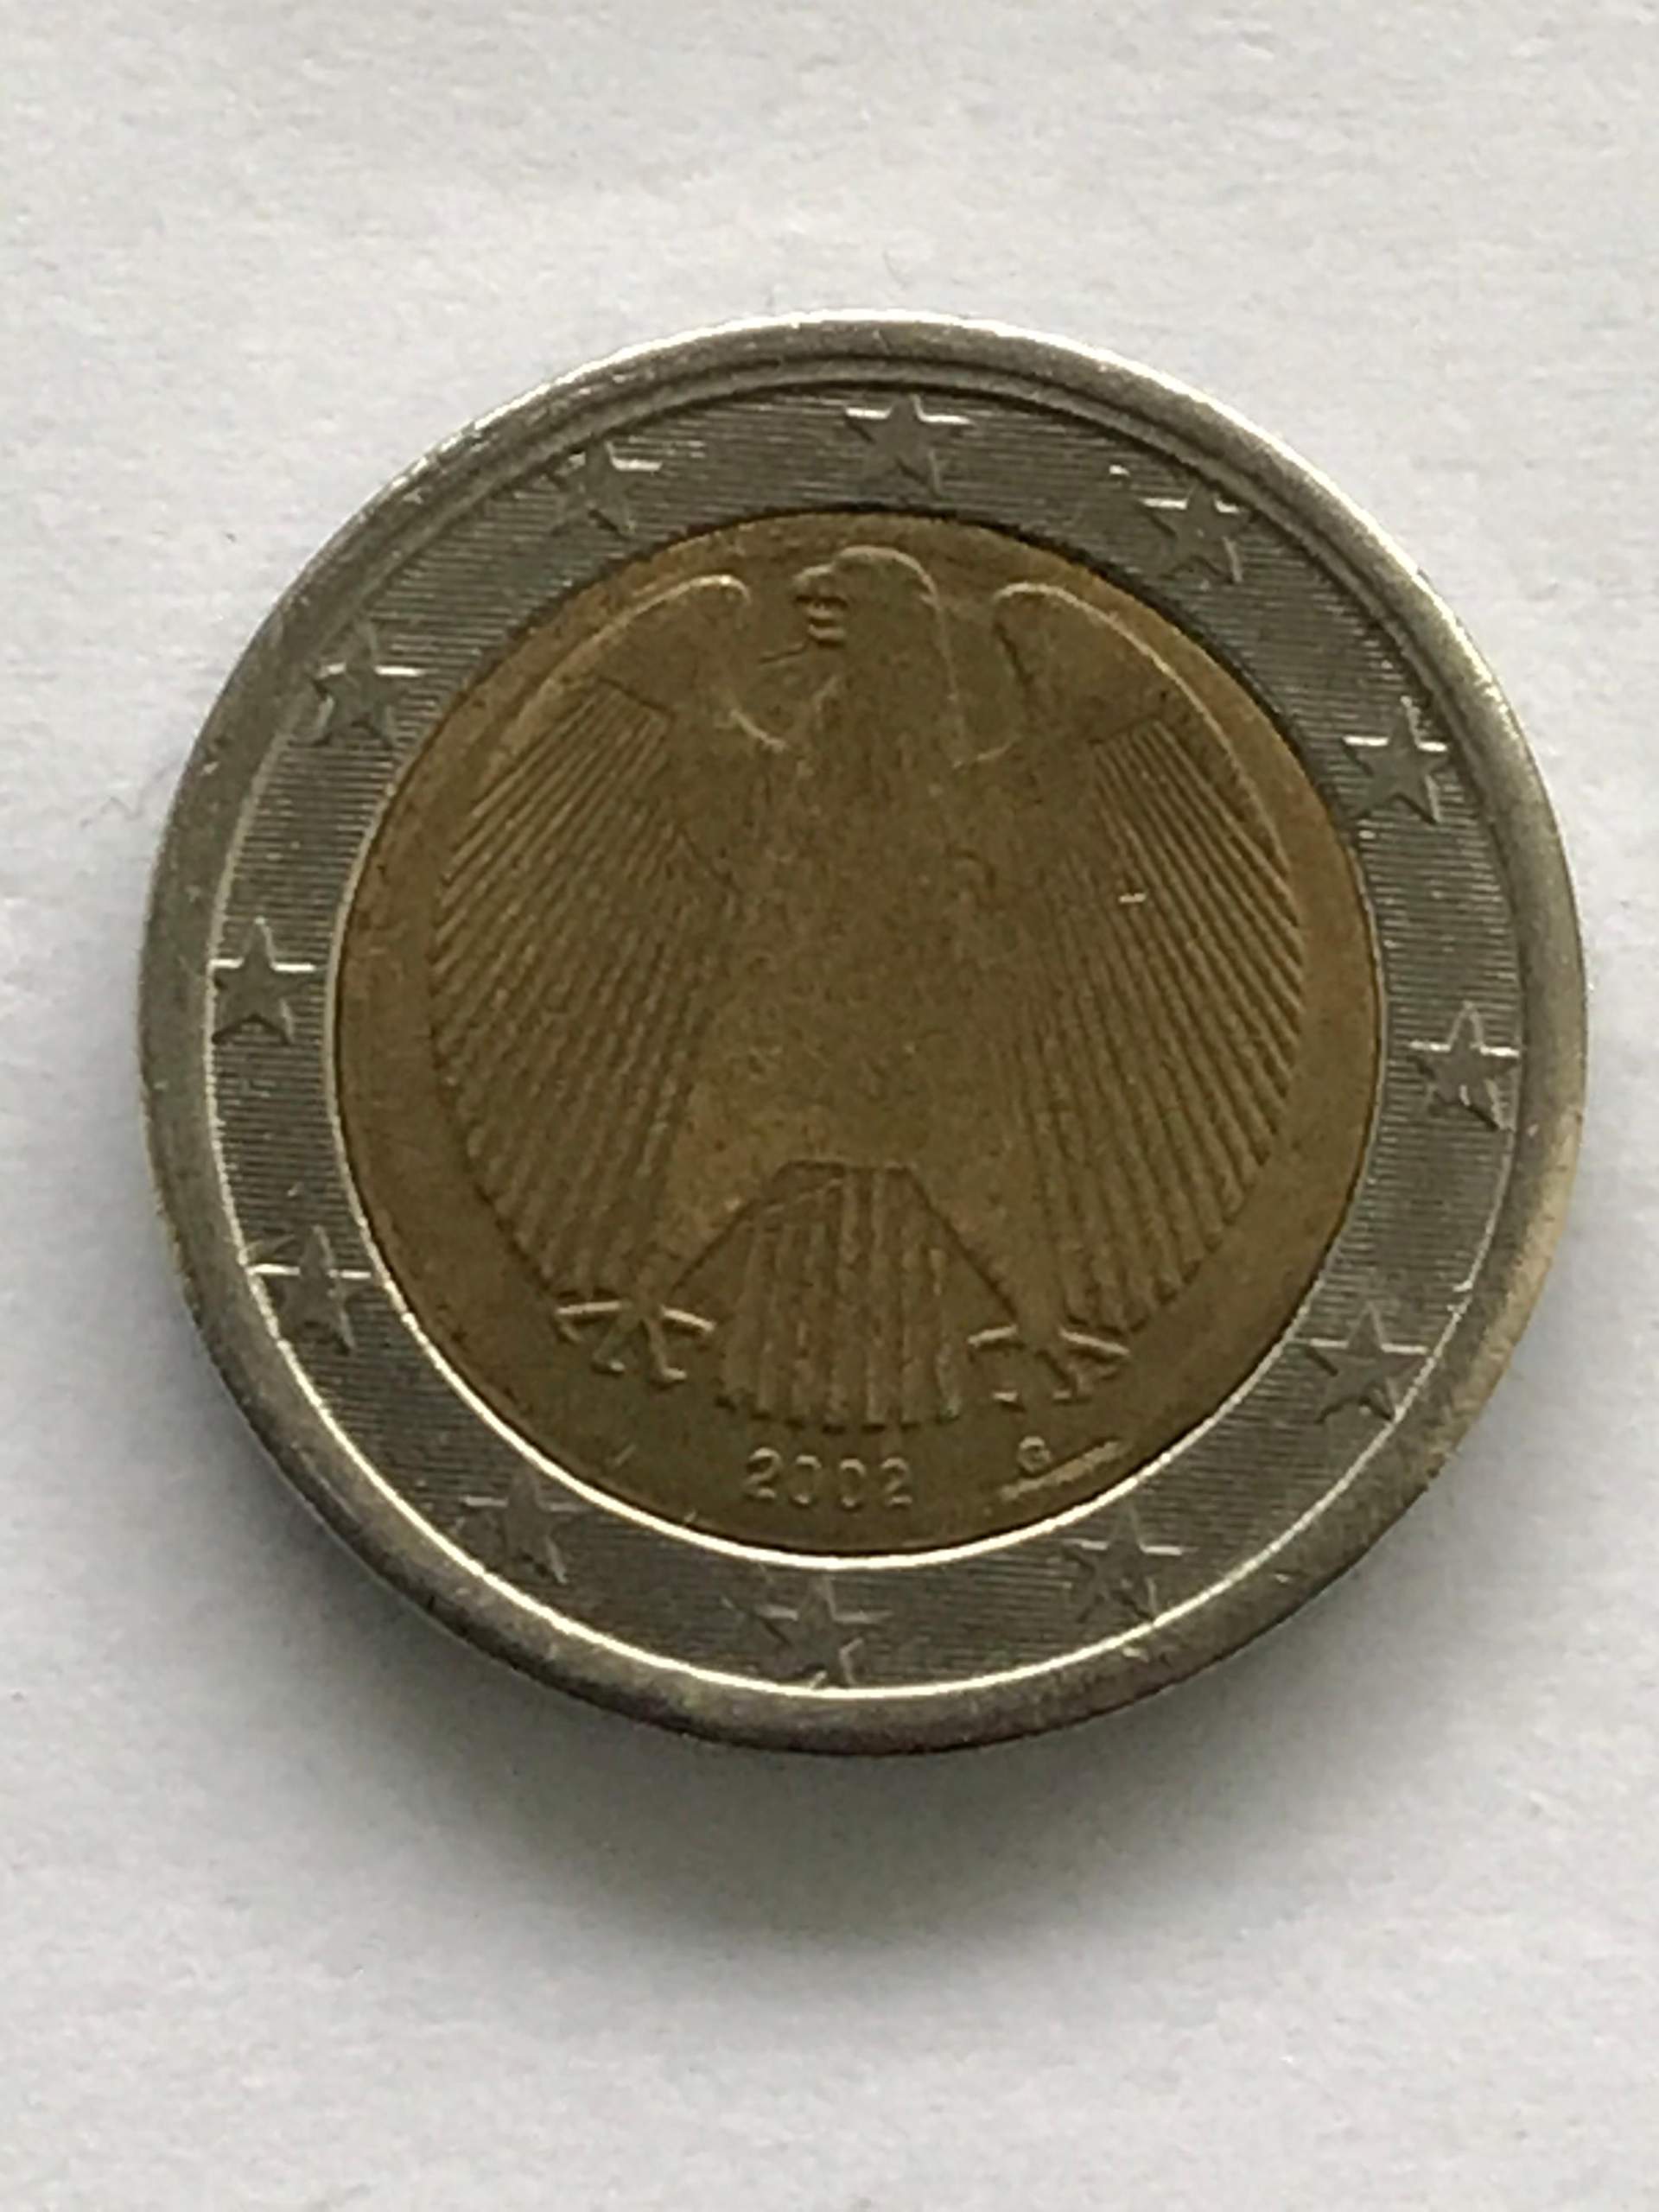 2 Euro Münze mit falscher Randschrift? (Geld, Europa, Wert)